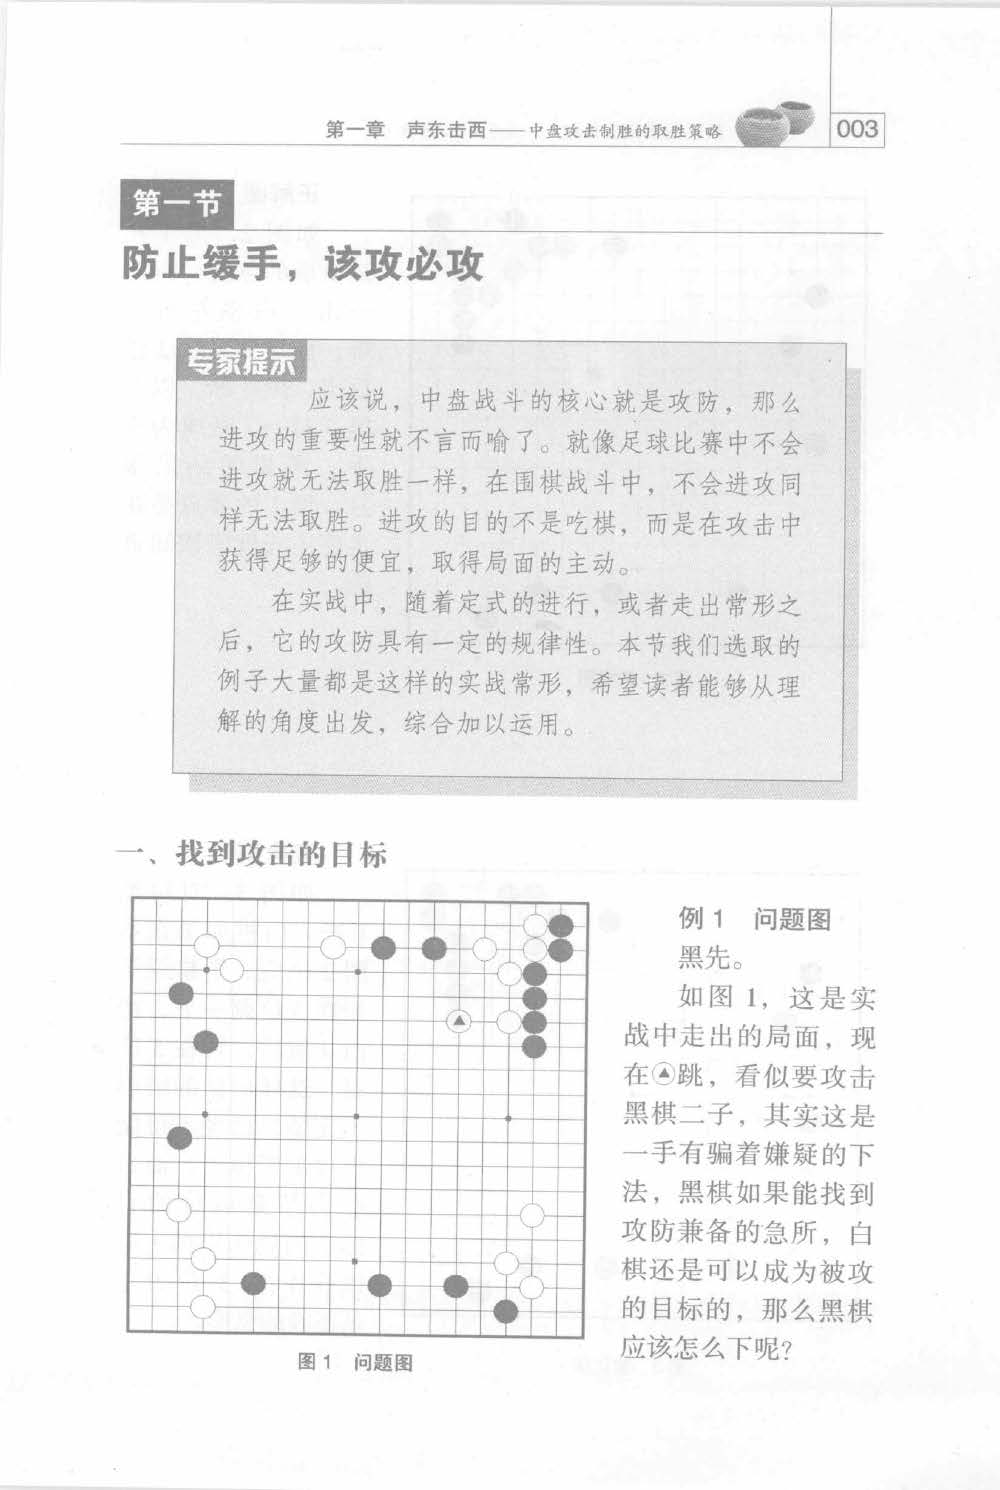 页面提取自－阶梯围棋初级教程 七分胜负的中盘-2.pdf.jpg